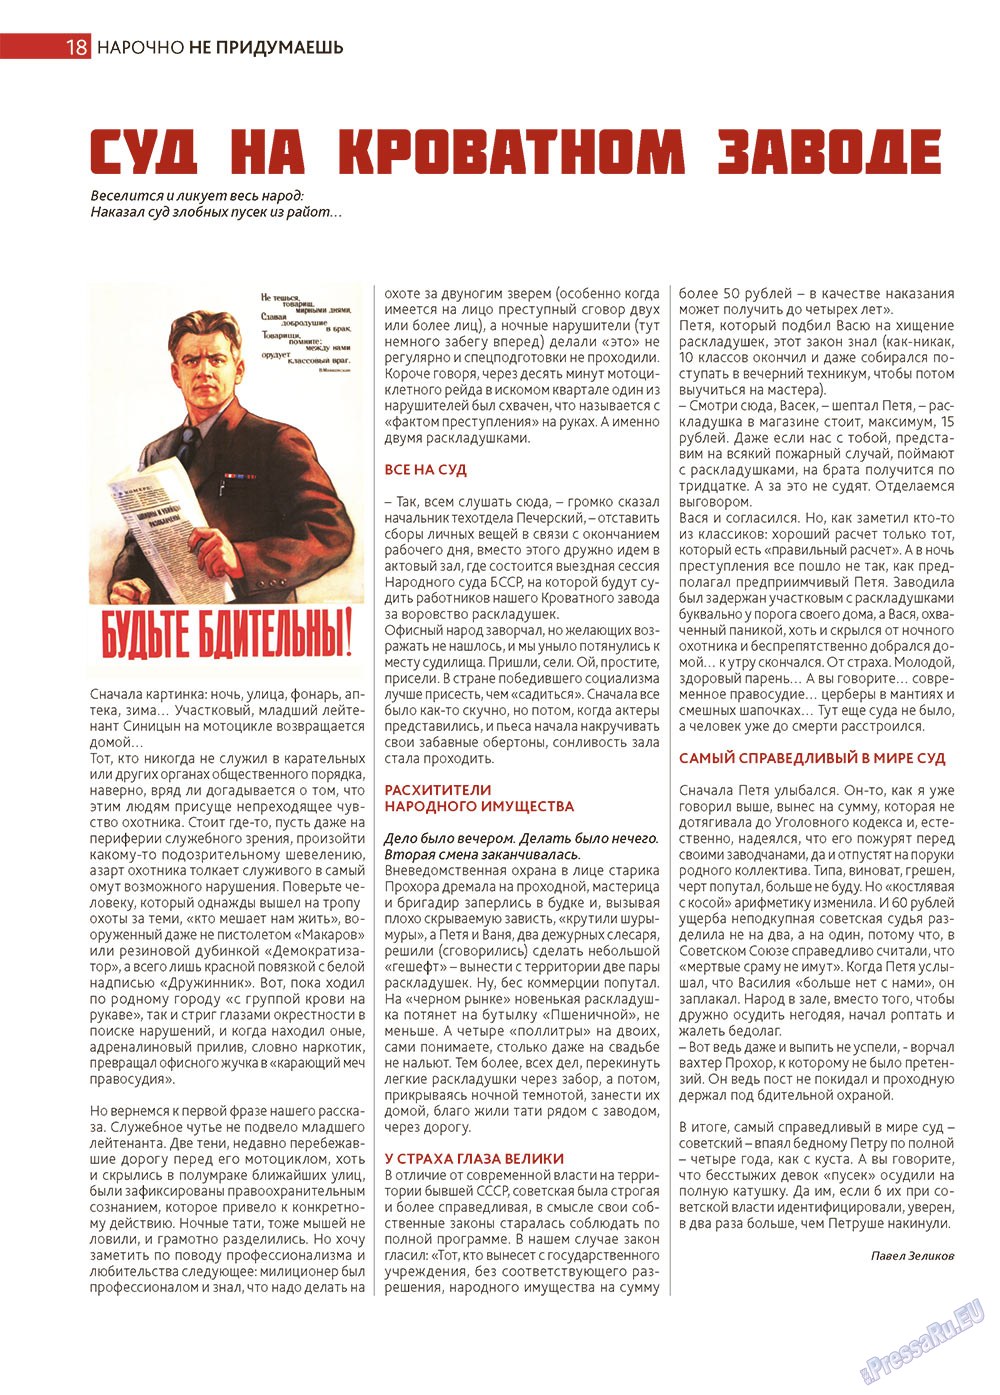 Афиша Augsburg (журнал). 2013 год, номер 2, стр. 18